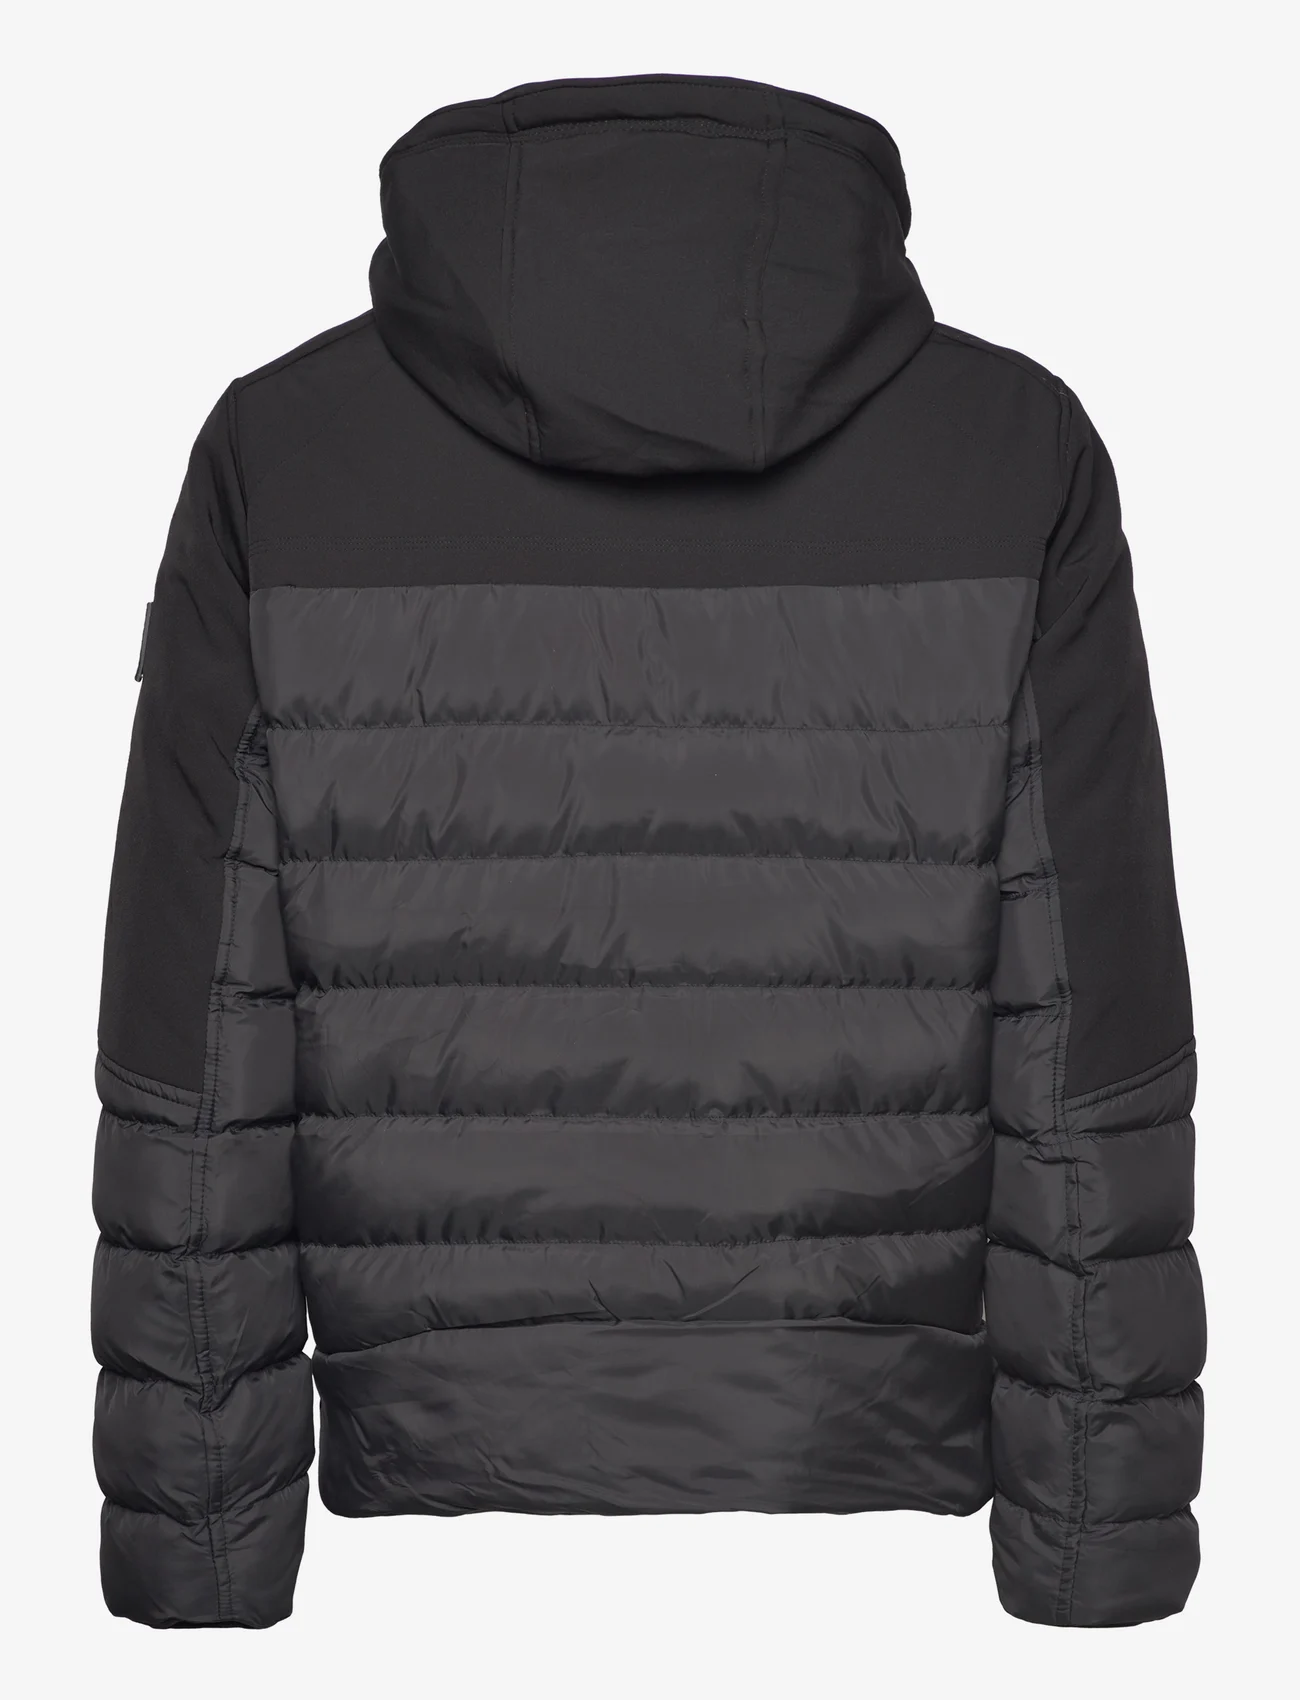 Garcia - men`s outdoor jacket - vinterjackor - black - 1